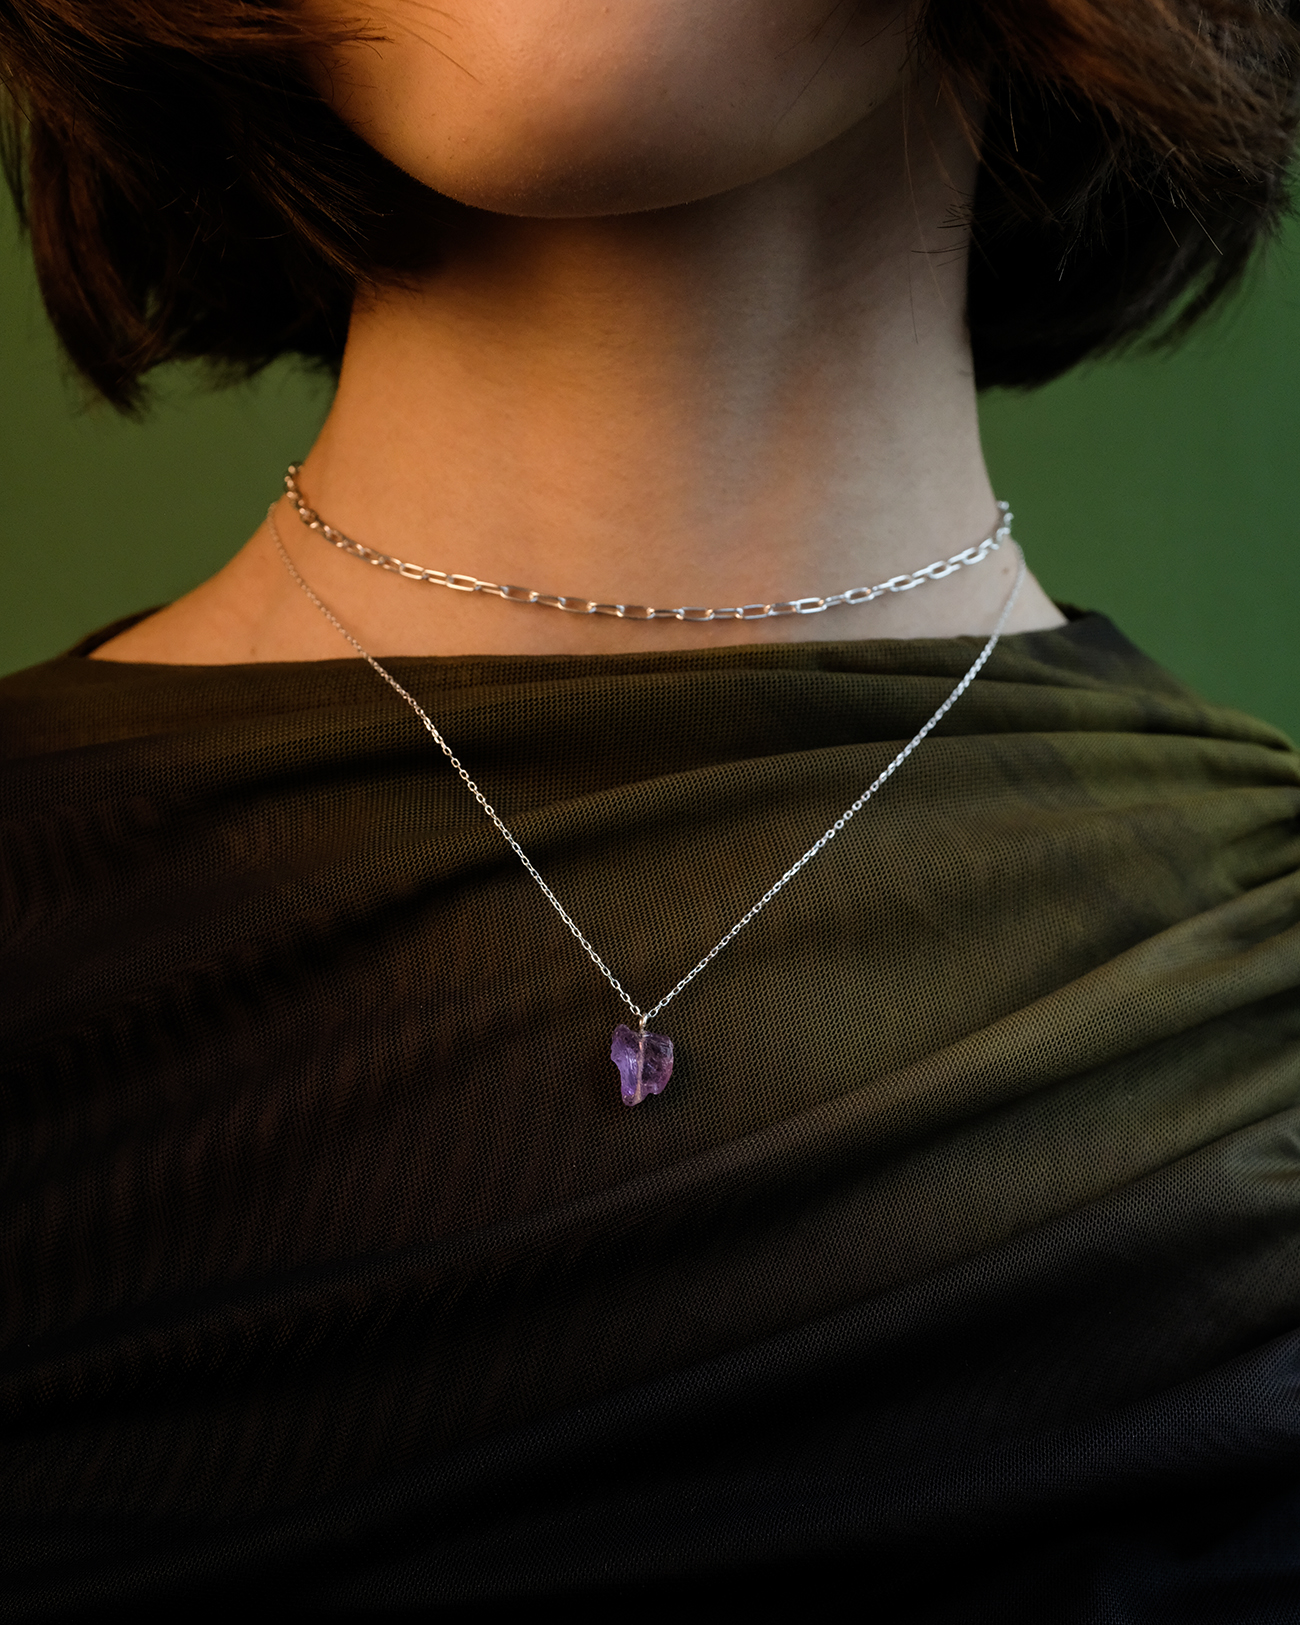 Metaformi-jewelry-uncut-gems-silver-necklace-9